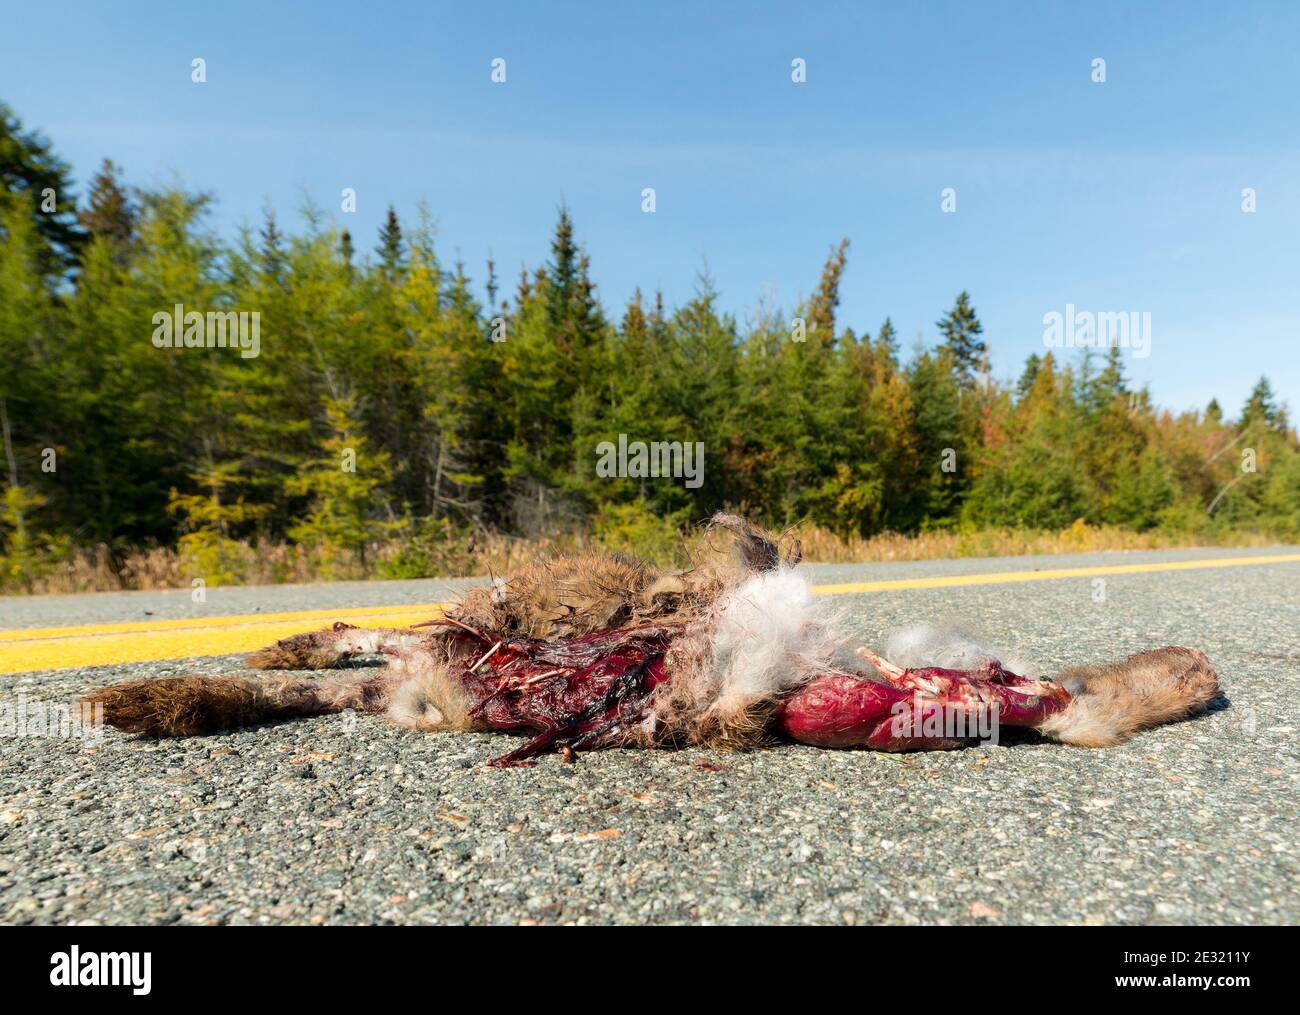 Lapin mort au milieu d'une route. Ses innards sont visibles, les os brisés sortent. Présence de sang coagulé. Espace pour le texte. Banque D'Images